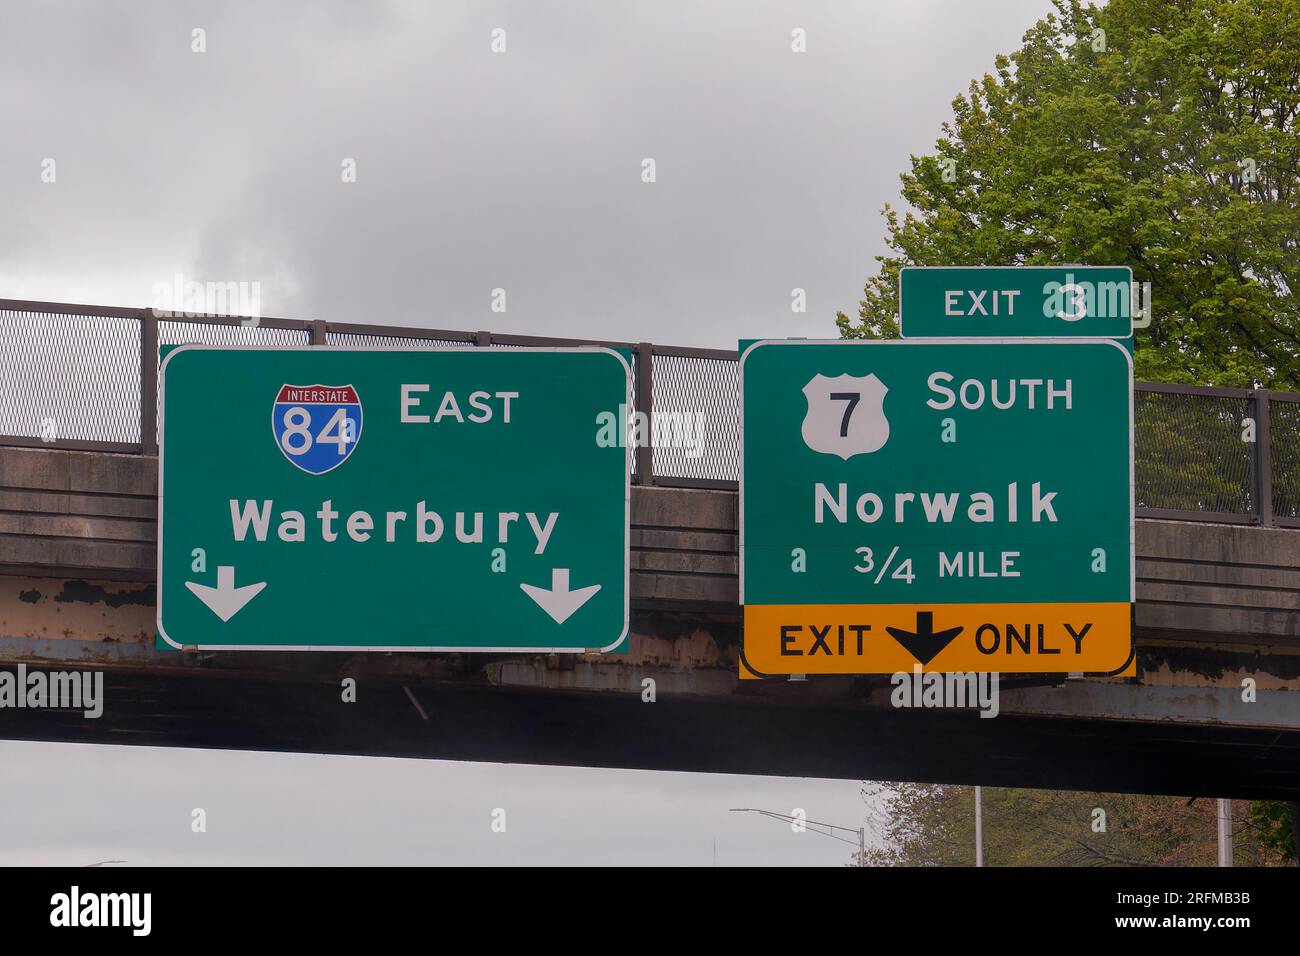 Prenez la sortie 3 pour l'US7 South vers Norwalk, Connecticut sur l'Interstate *$ Yankee Expressway East vers Waterbury, Connecticut Banque D'Images